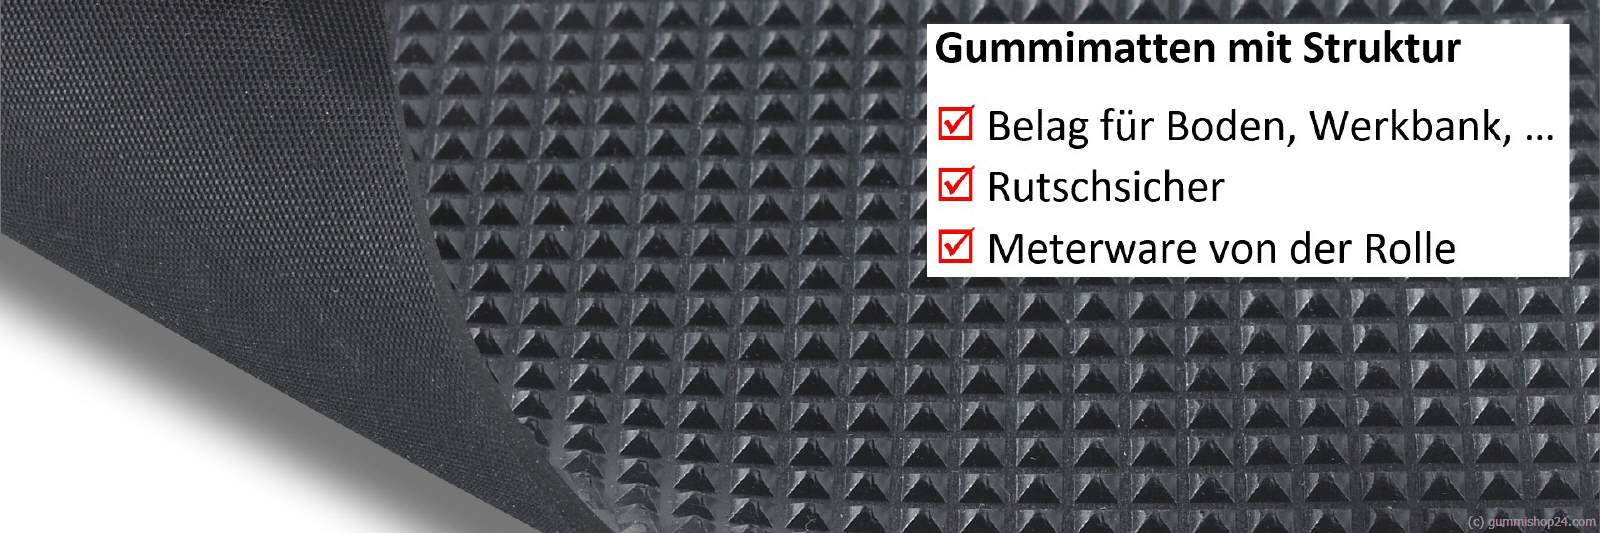 Pyramidenmatte Gummimatte schwarz